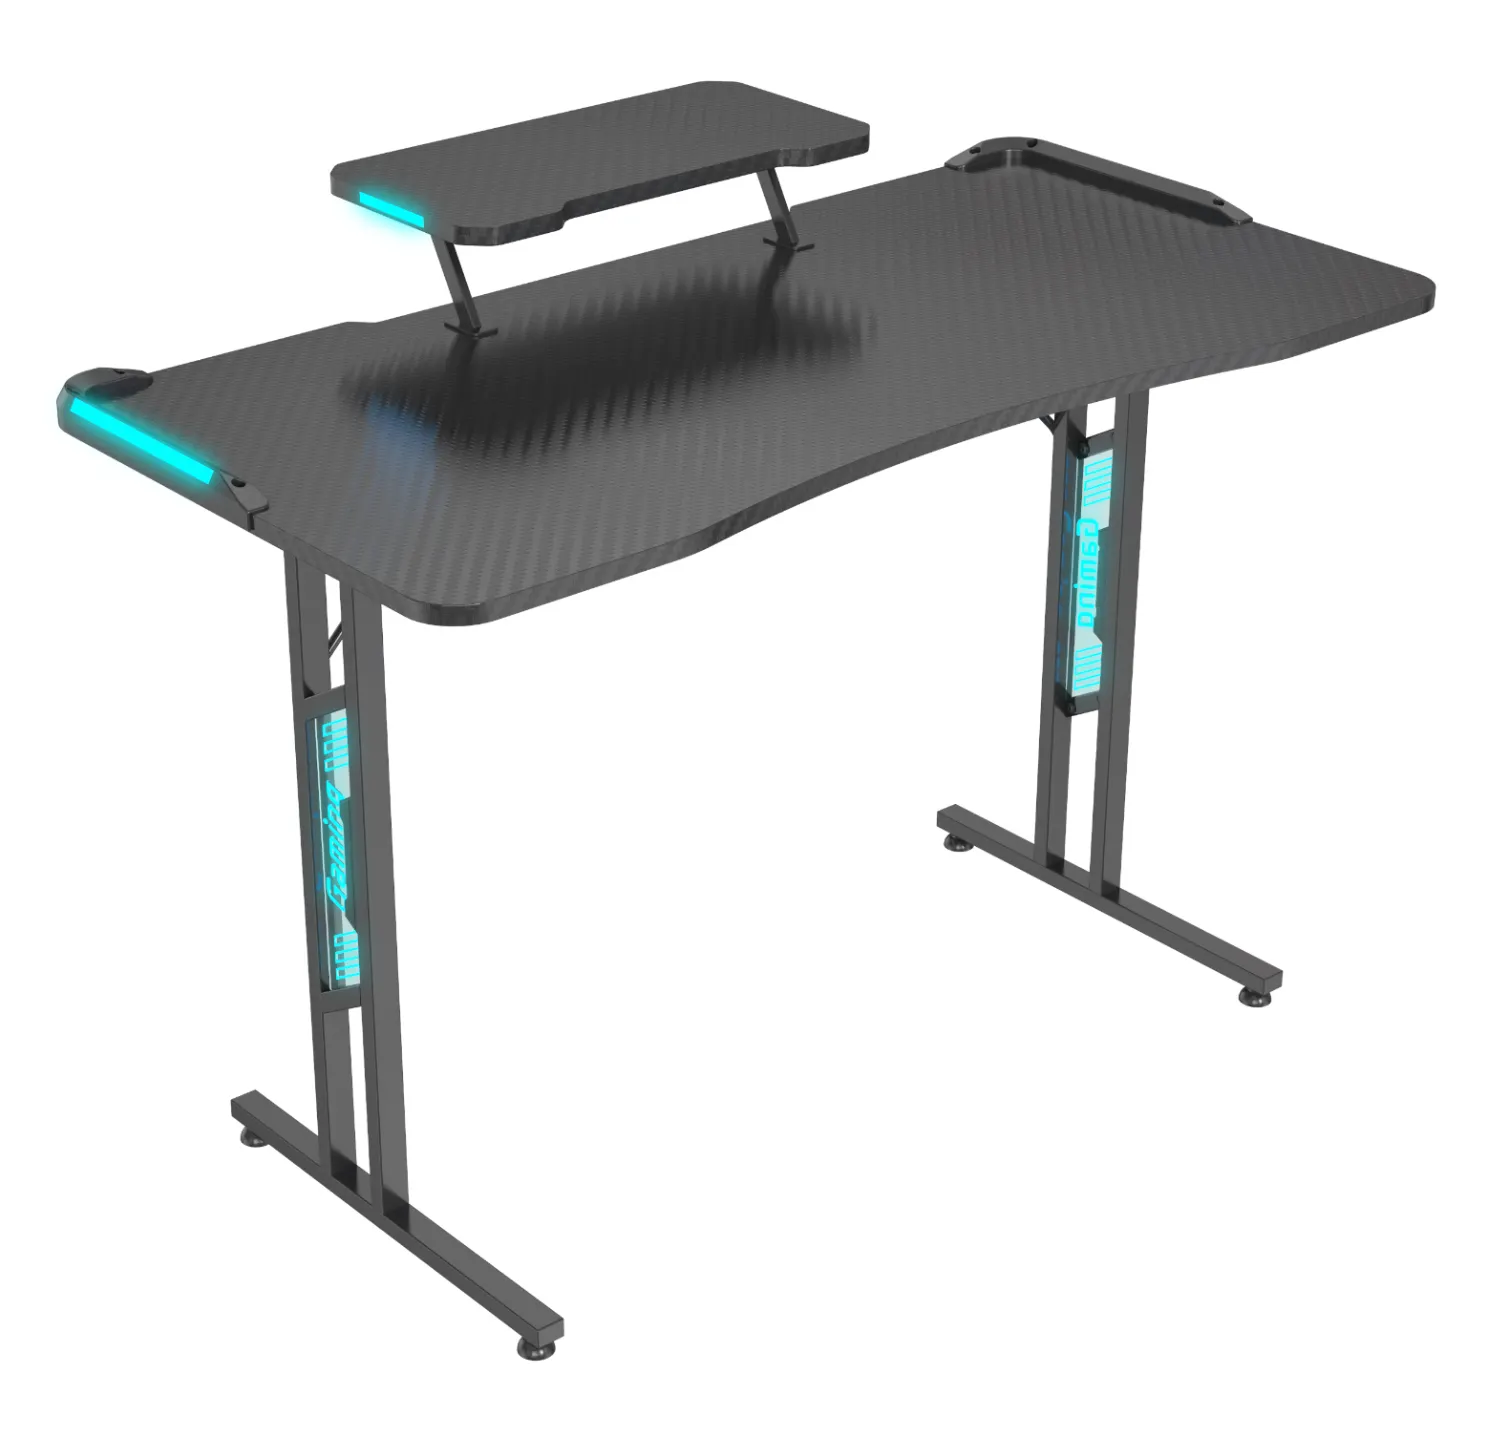 Monturas en V ErgoFusion moderno negro de Pie ajustable PC Gaming escritorio hierro muebles de oficina Hogar Escuela Mesa pierna tablero Acrílico